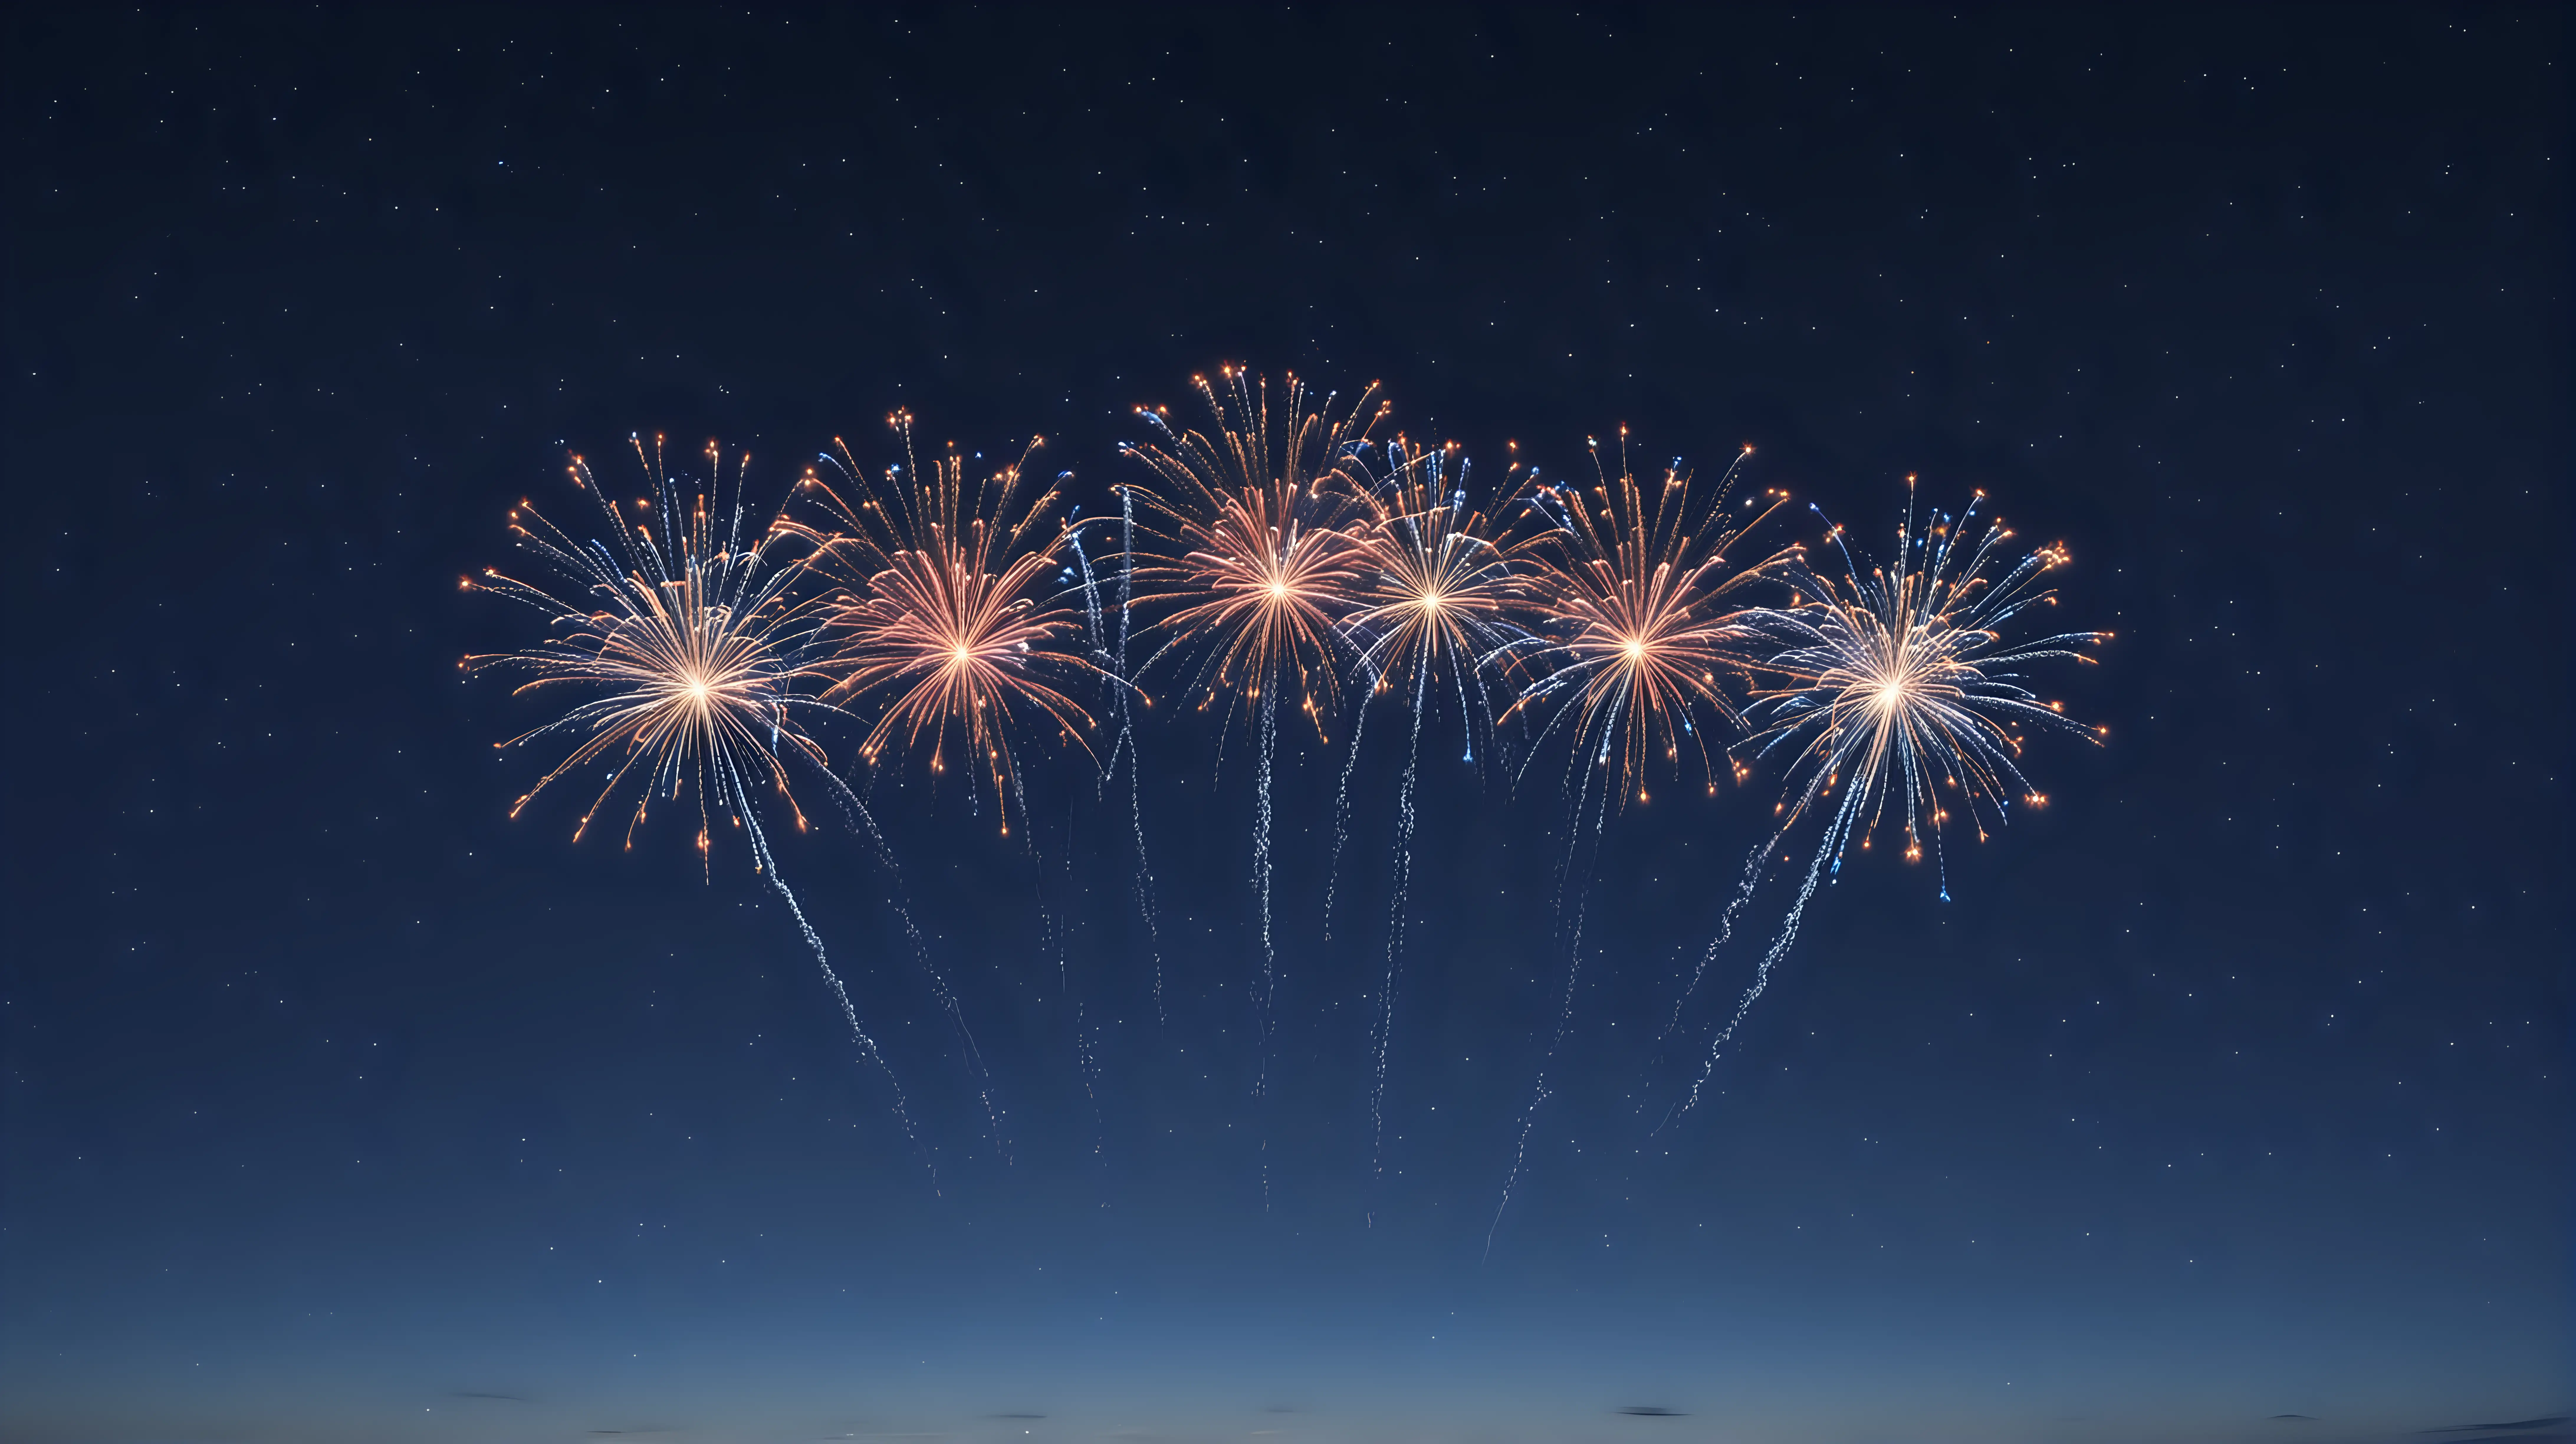 Colorful Miniature Fireworks Display in Vast Dark Blue Sky